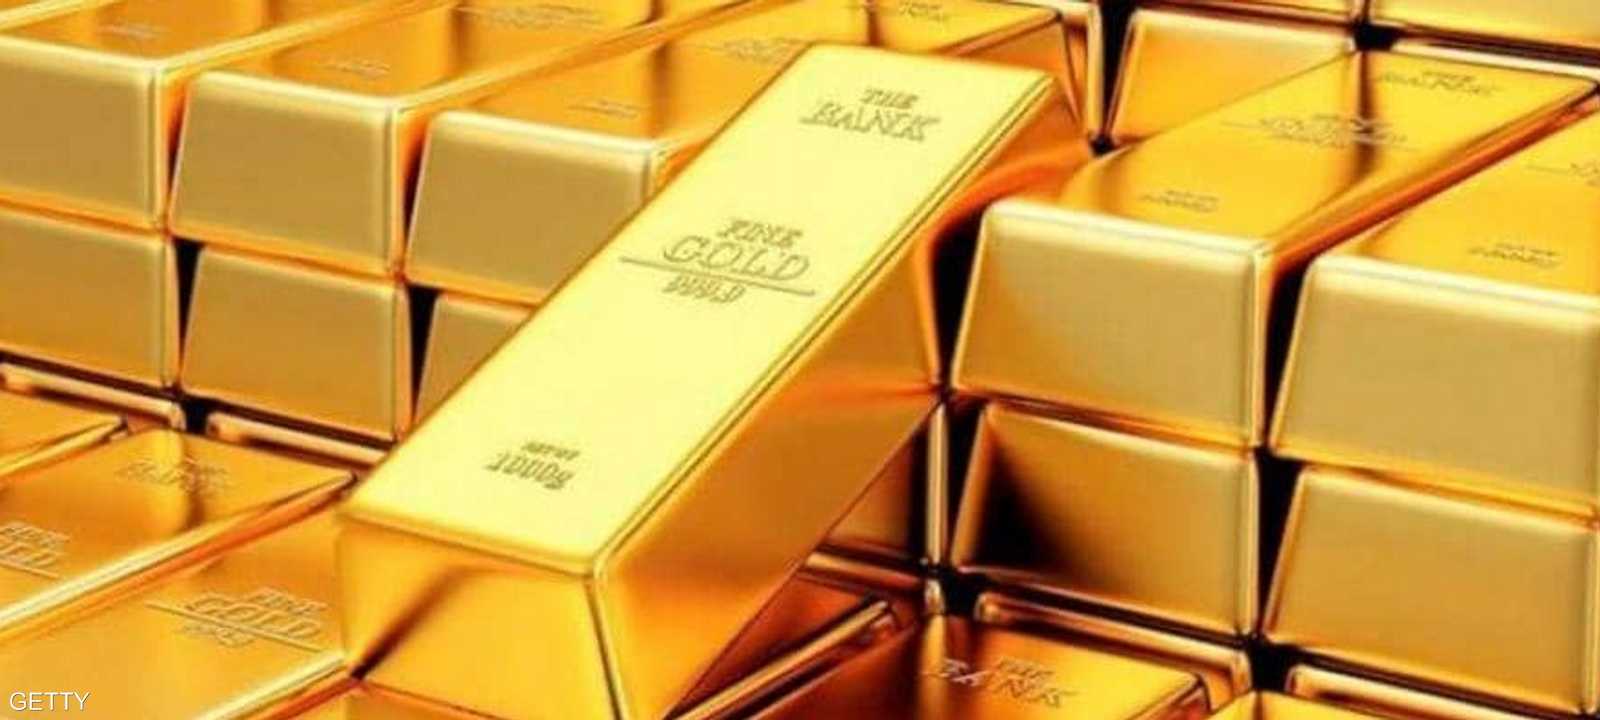 سجلت أسعار الذهب مستويات قياسية مرتفعة